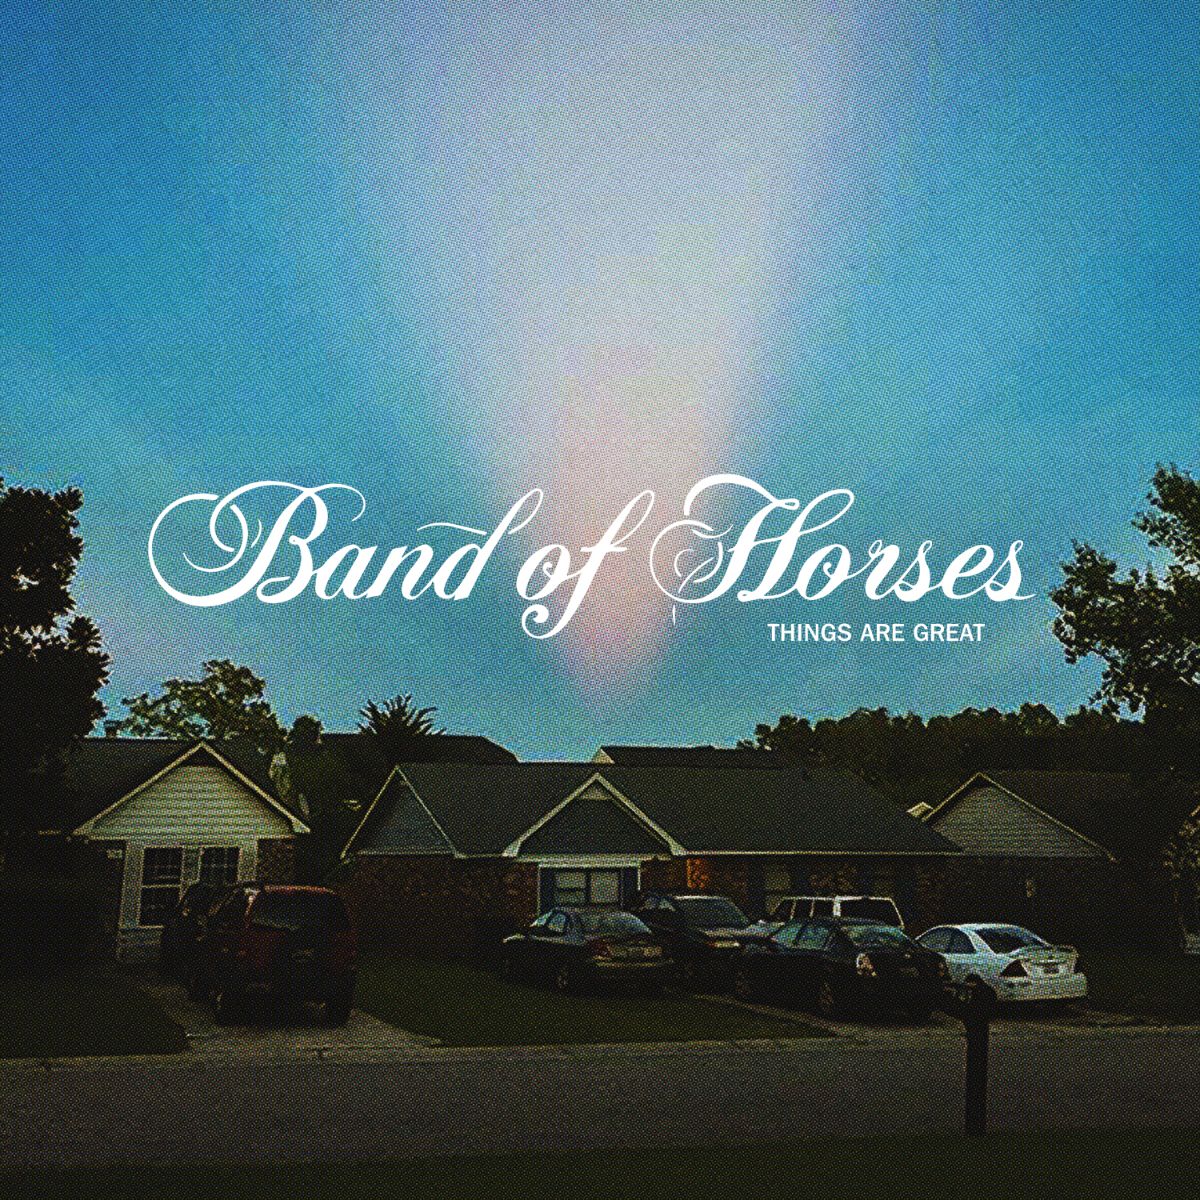 Band of Horses nos ofrece esperanza tras la pérdida con 'Things Are Great'